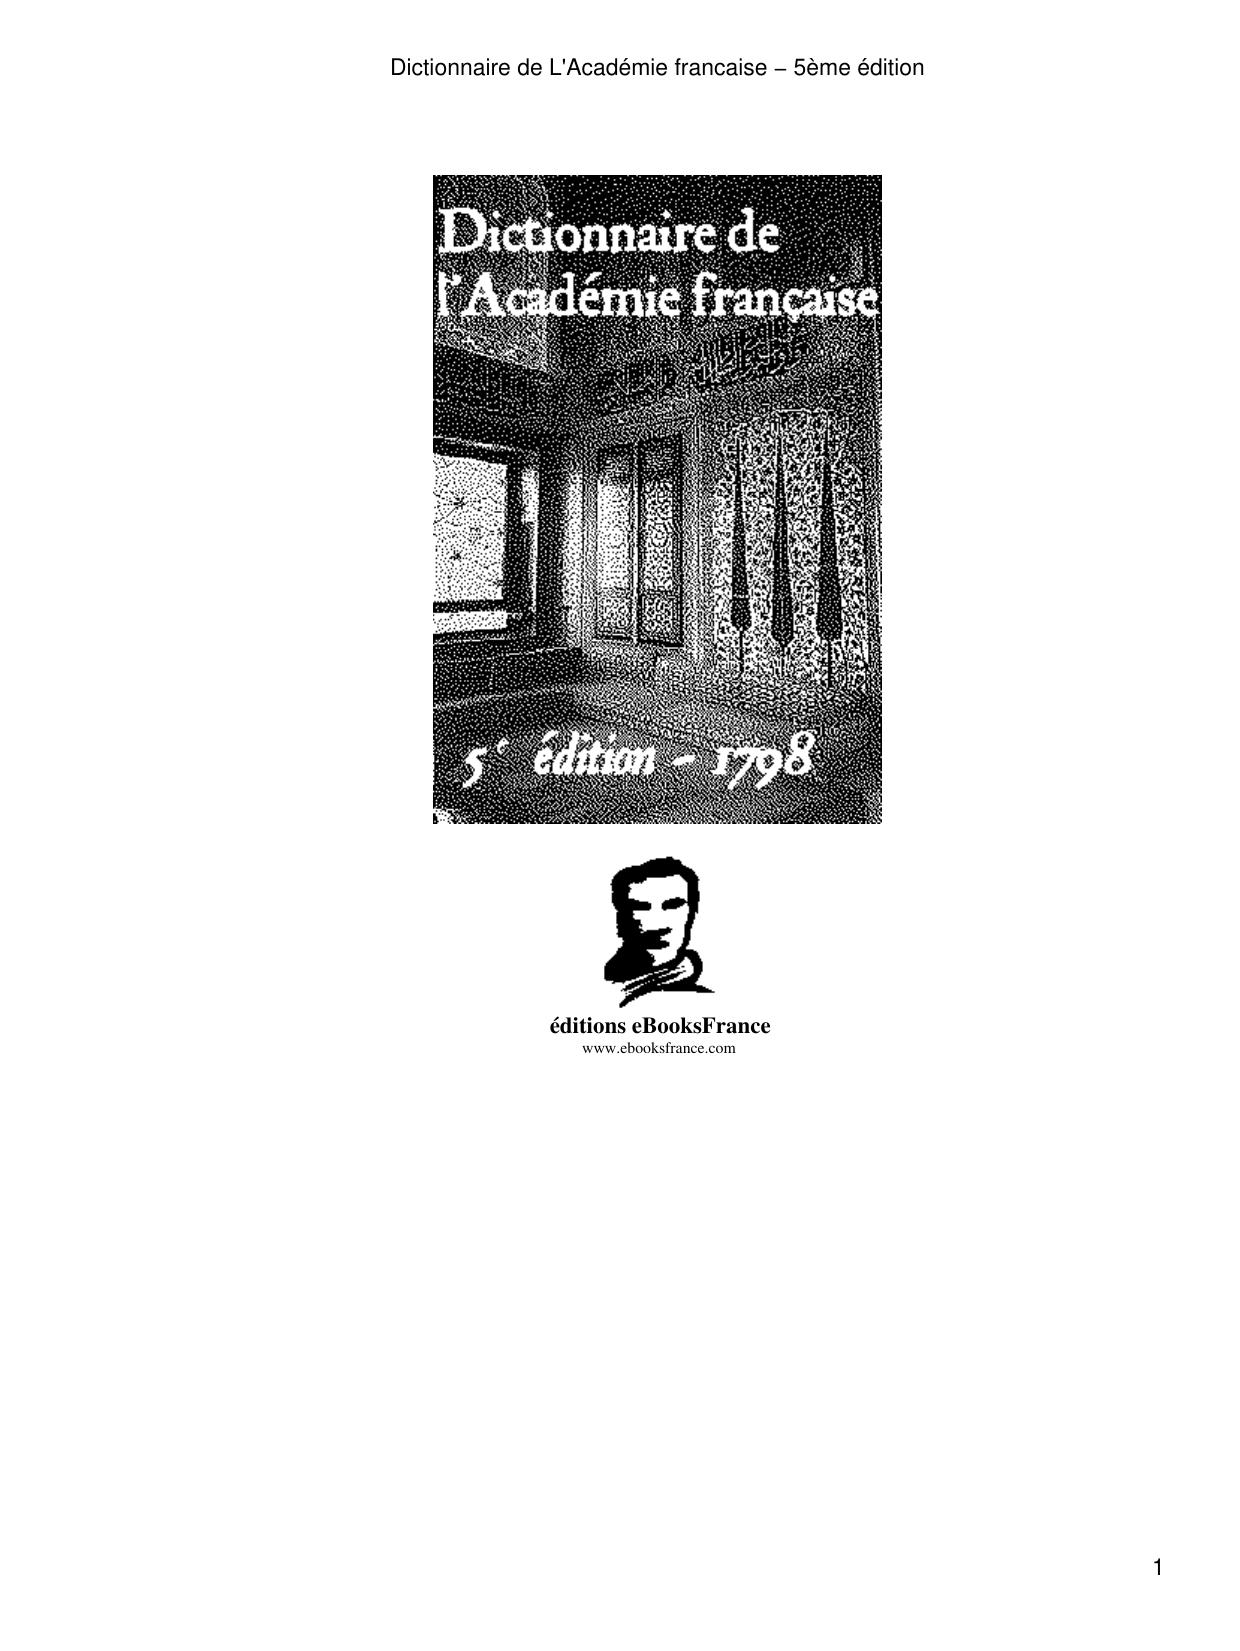 Dictionnaire de L'Académie francaise - 5ème édition